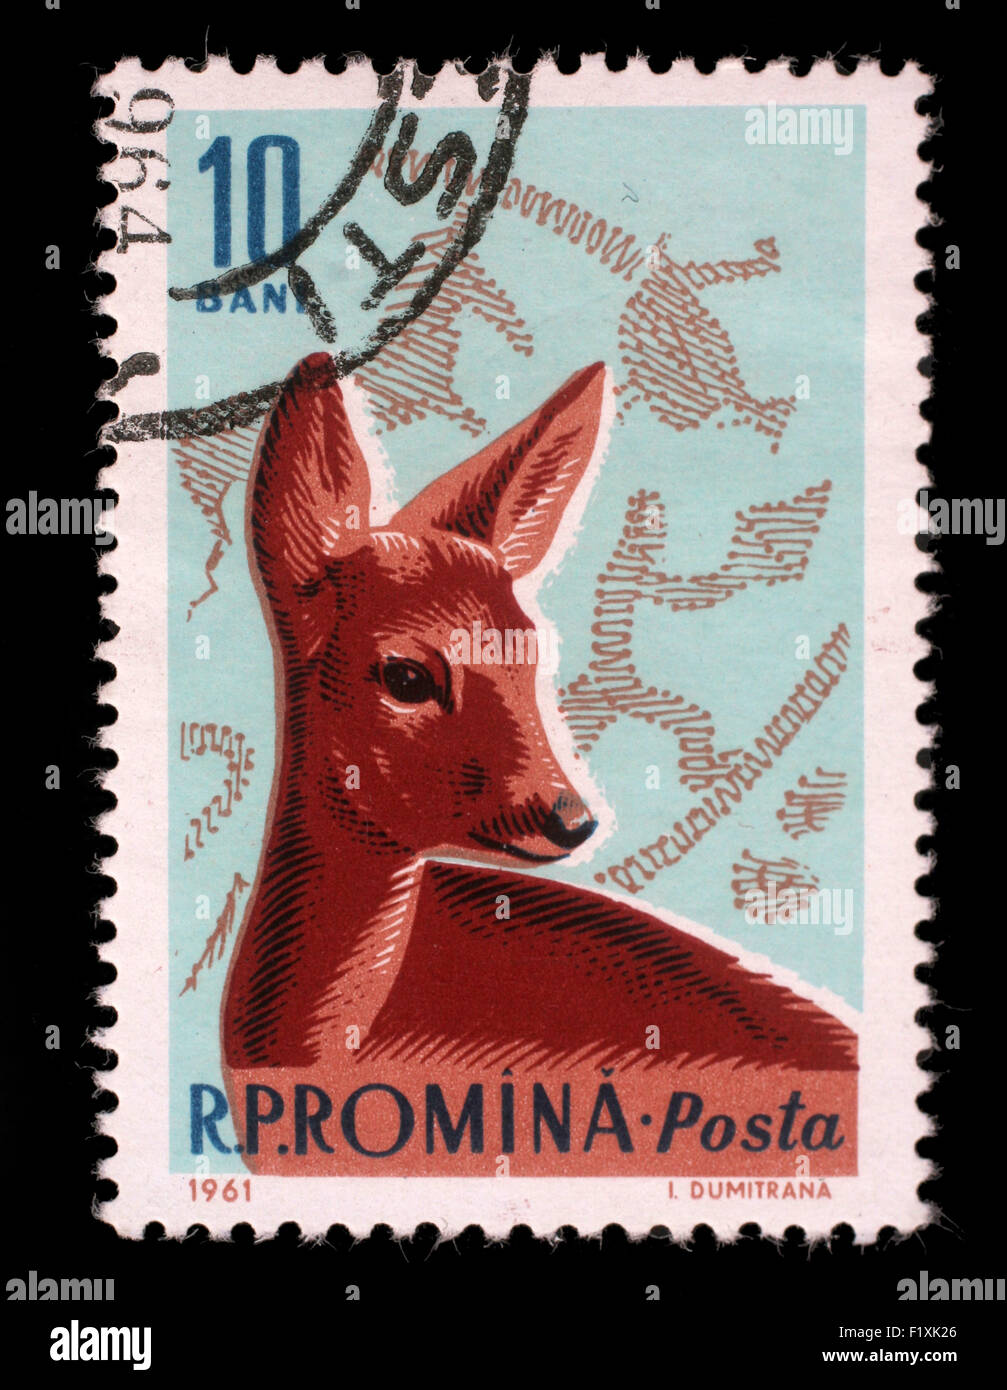 Timbres par la Roumanie, voir les chevreuils et à l'âge du bronze, vers 1961 Scène de chasse. Banque D'Images